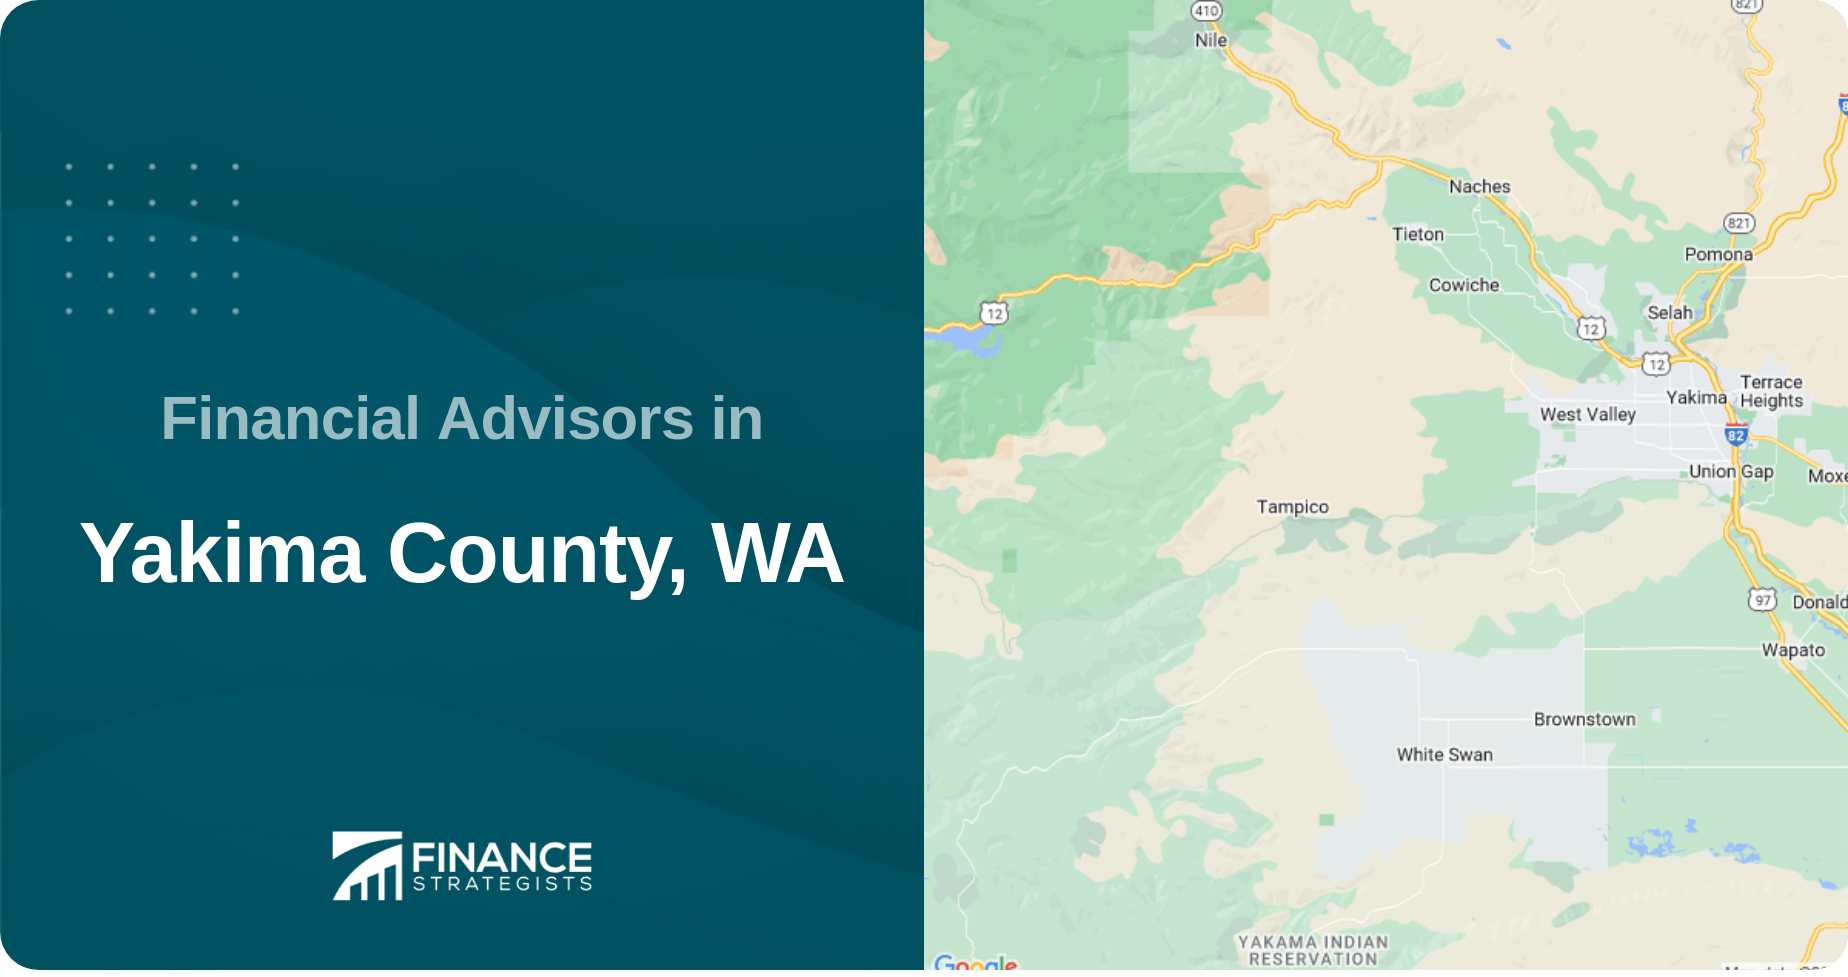 Financial Advisors in Yakima County, WA